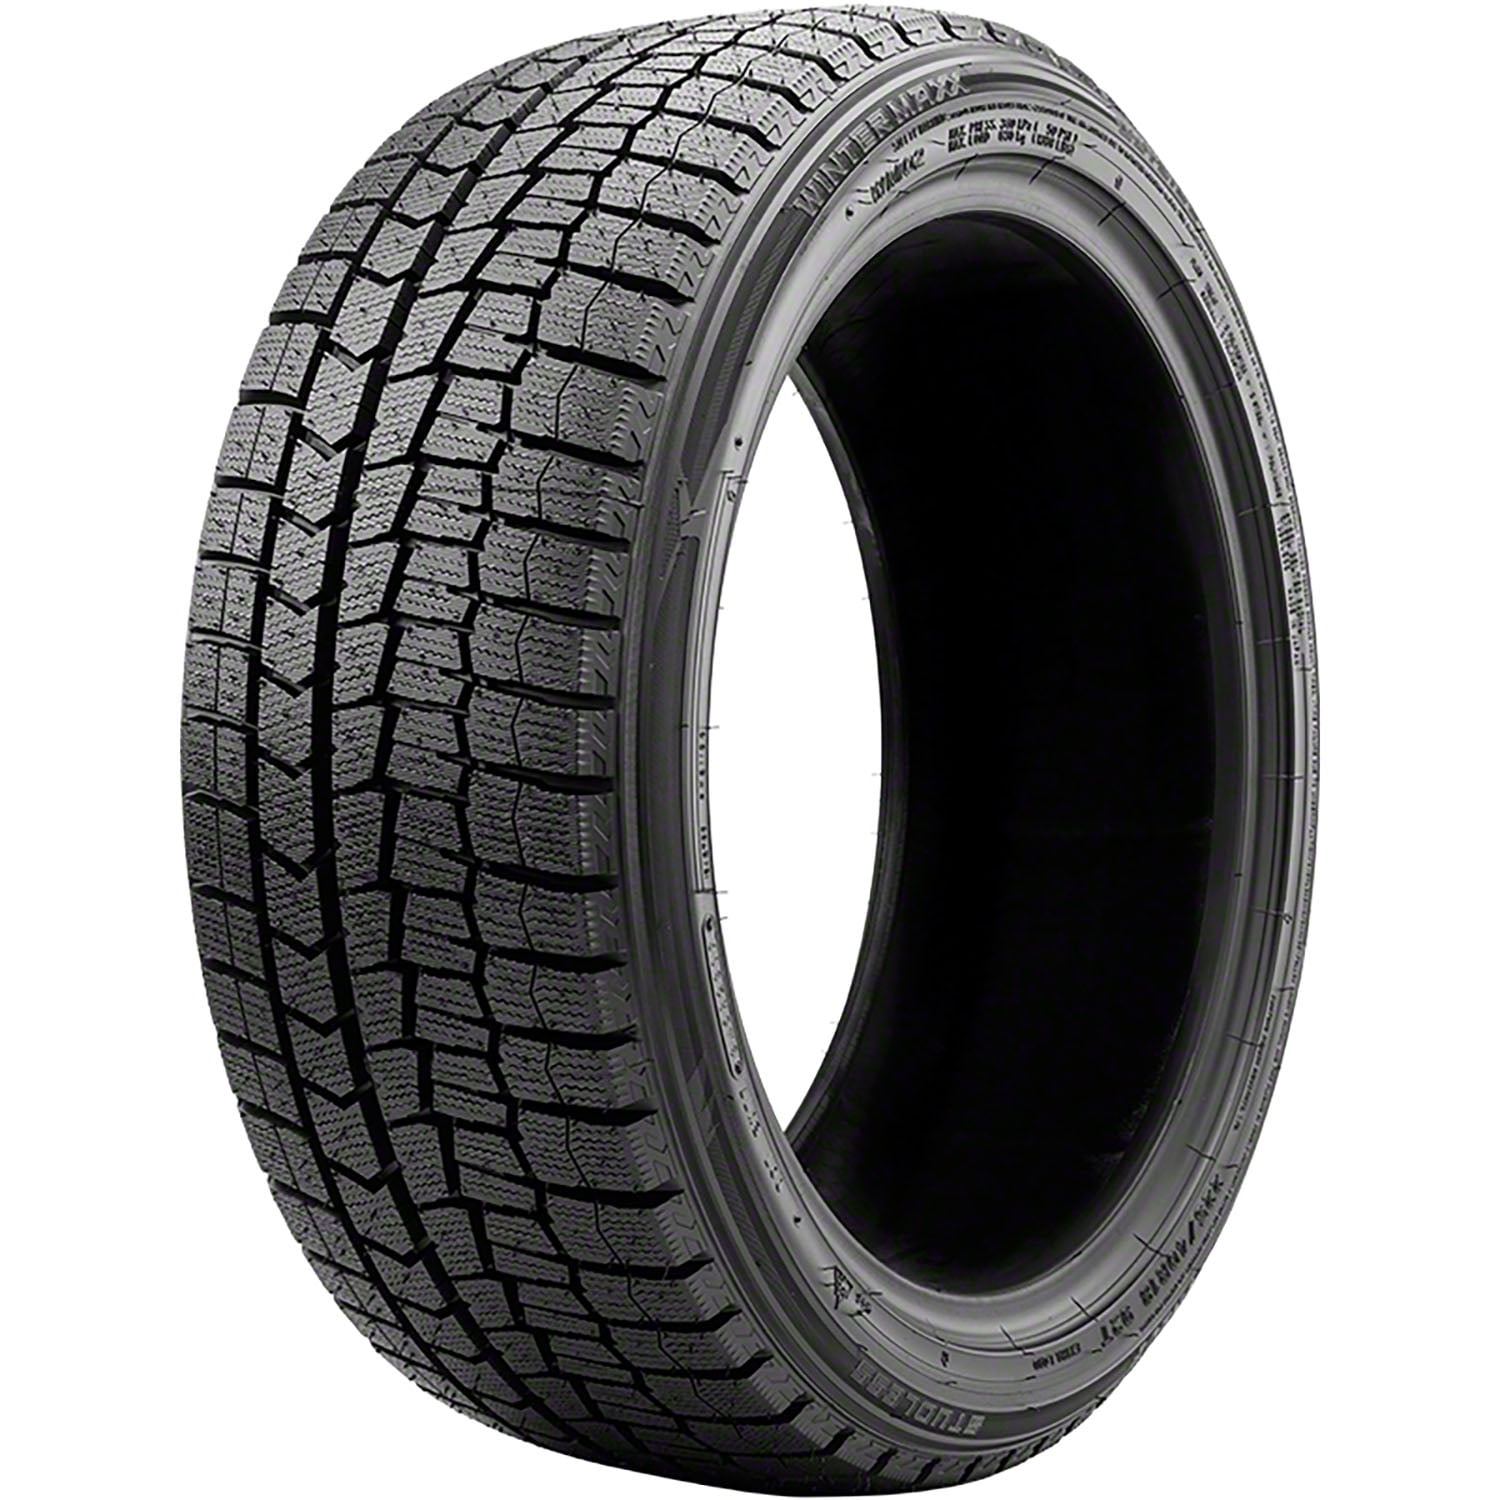 Winter Dunlop Tire 215/55R16 2 Maxx Winter 97T